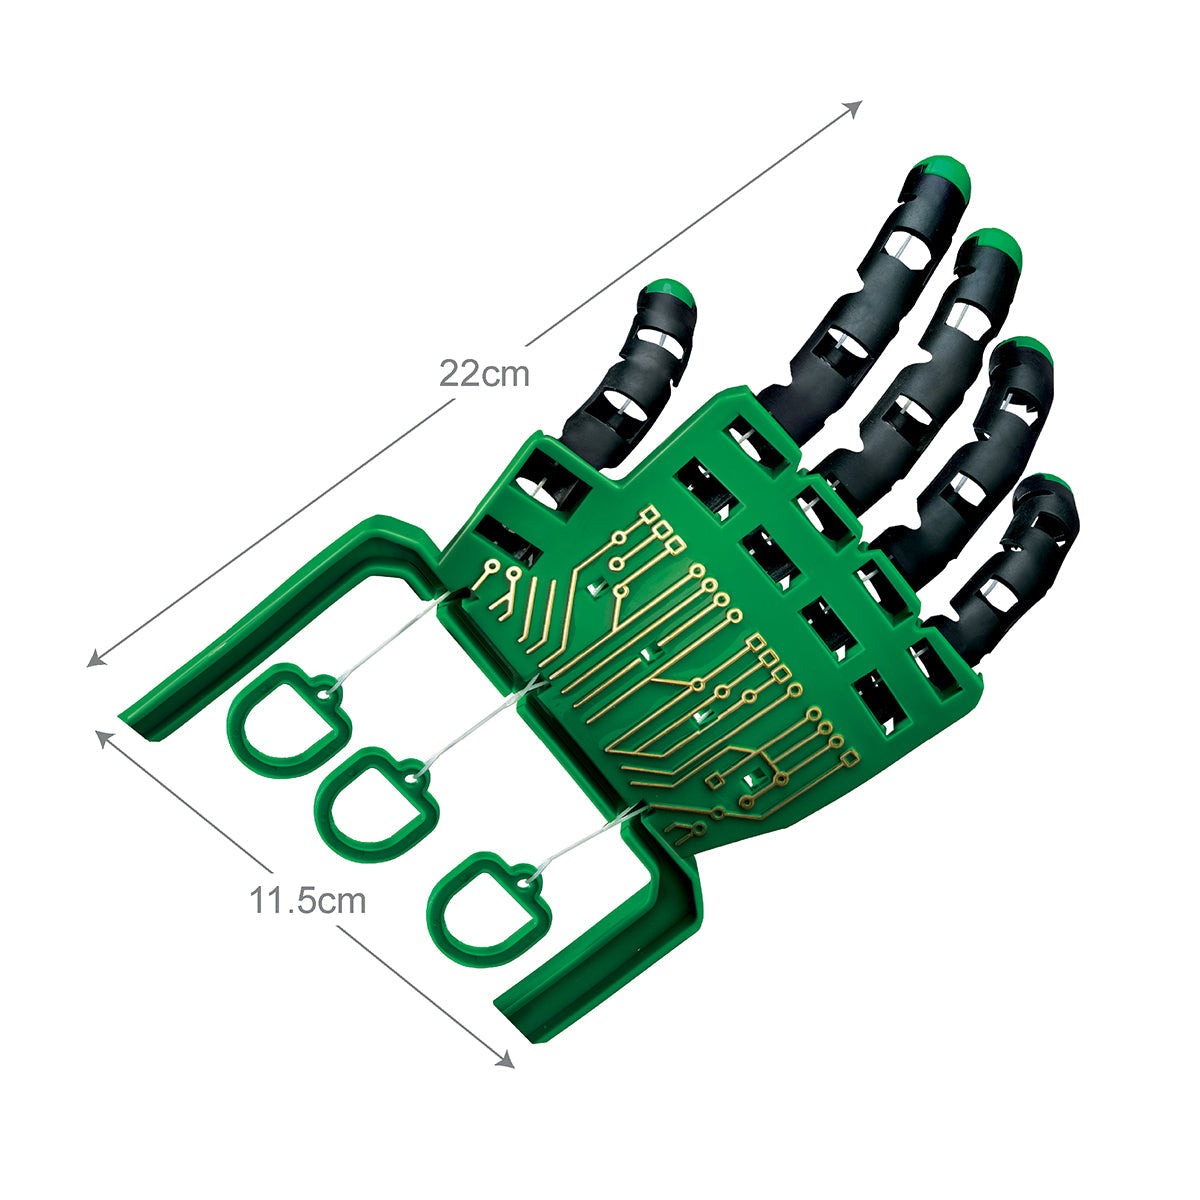 KidzLabs Robotic Hand